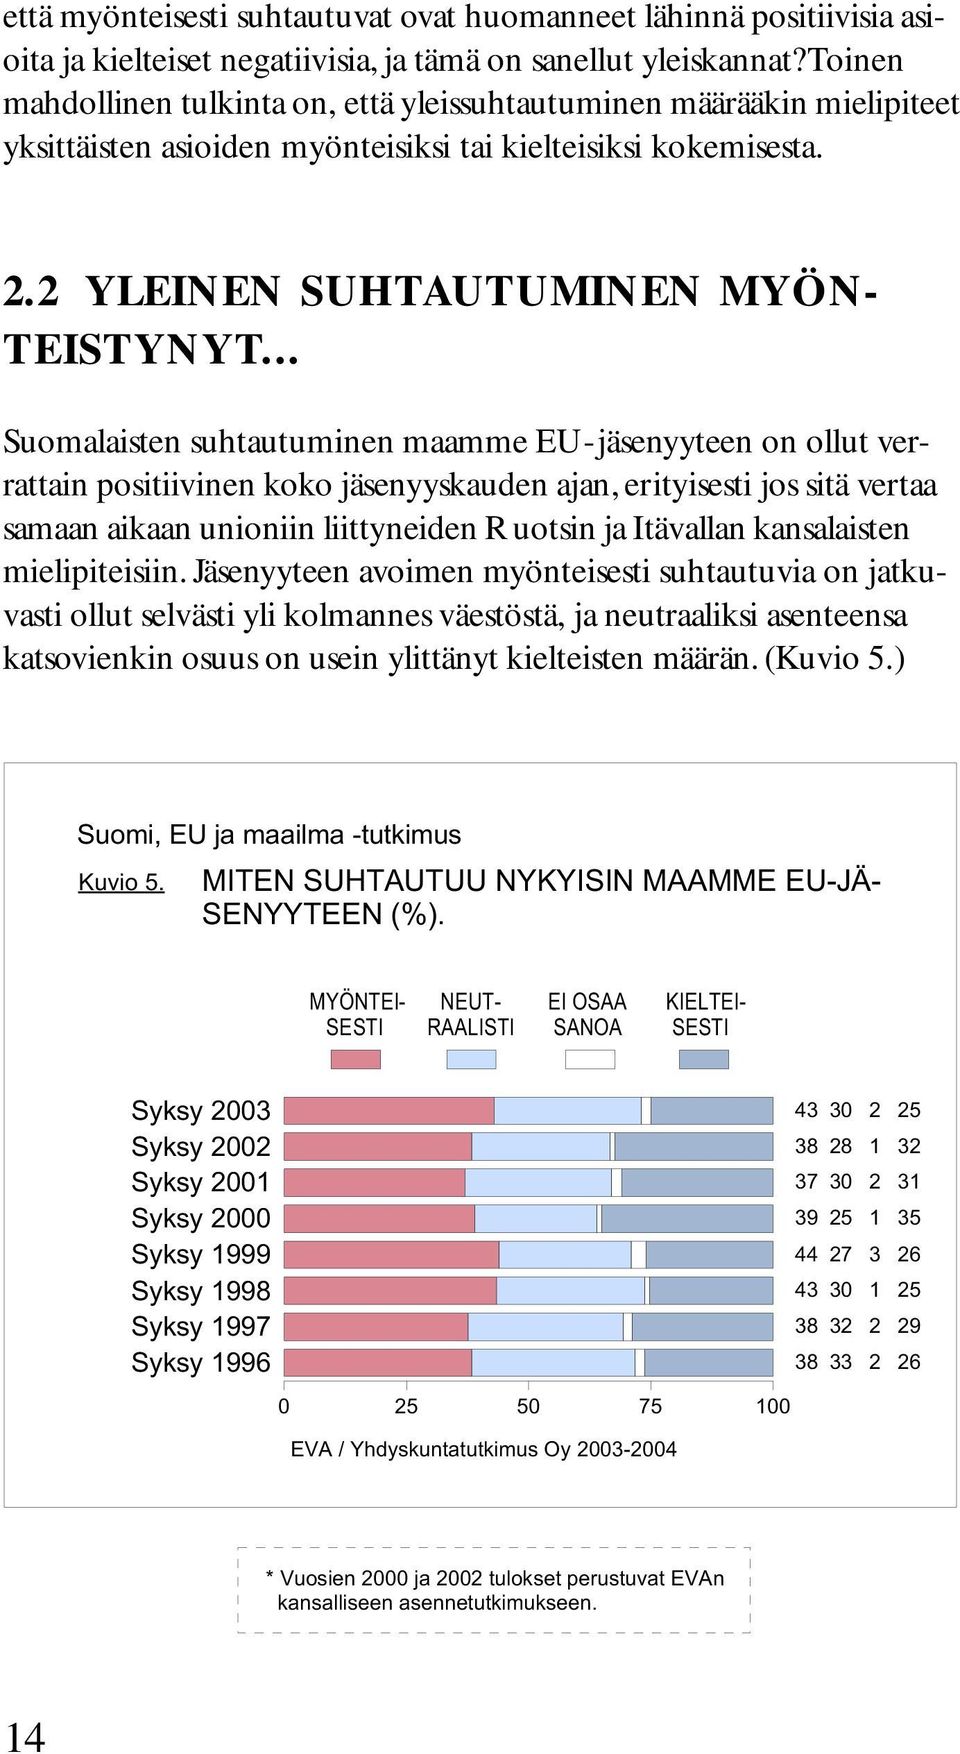 .. Suomalaisten suhtautuminen maamme EU-jäsenyyteen on ollut verrattain positiivinen koko jäsenyyskauden ajan, erityisesti jos sitä vertaa samaan aikaan unioniin liittyneiden Ruotsin ja Itävallan